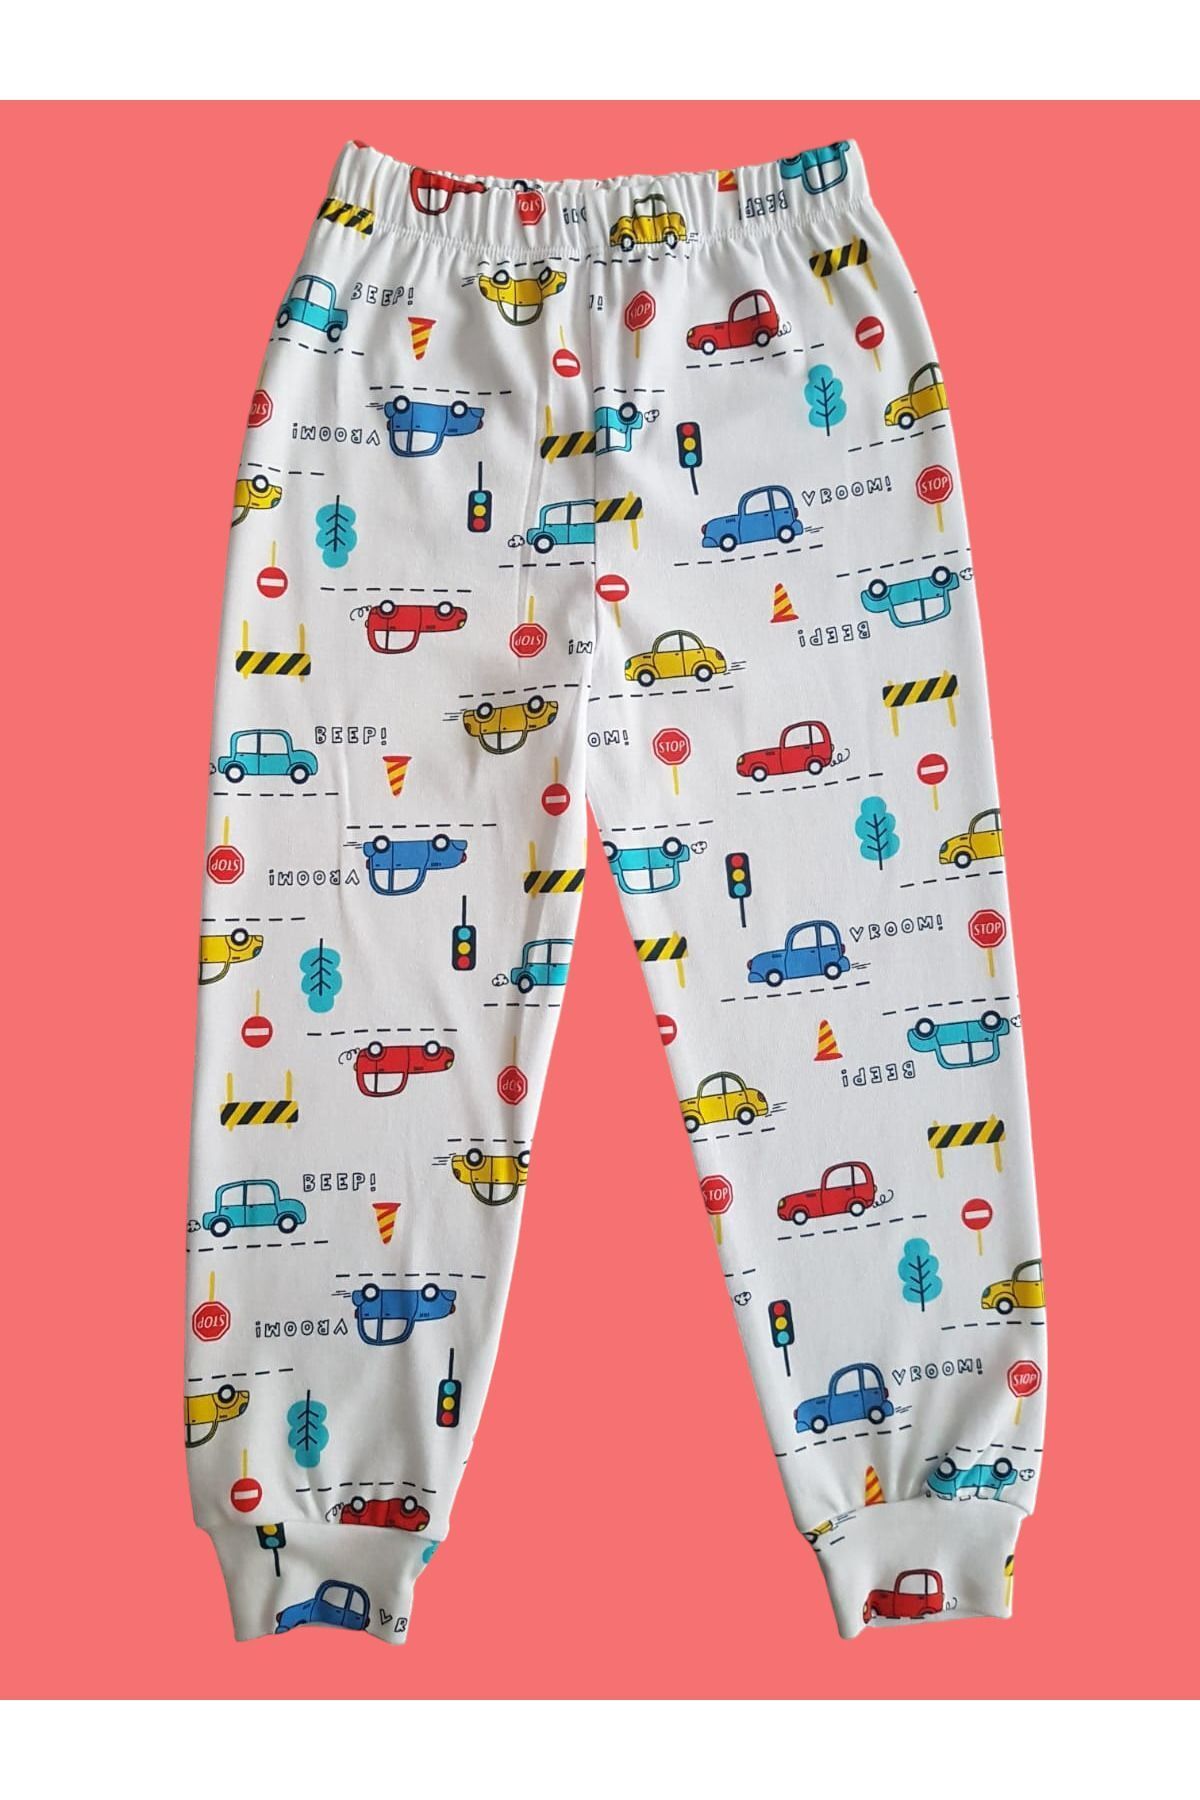 Çamaşır Bahçesi Çocuk pijama altı #desenlipijamaaltı #baskılıpijamaaltı #çamaşırbahçesi